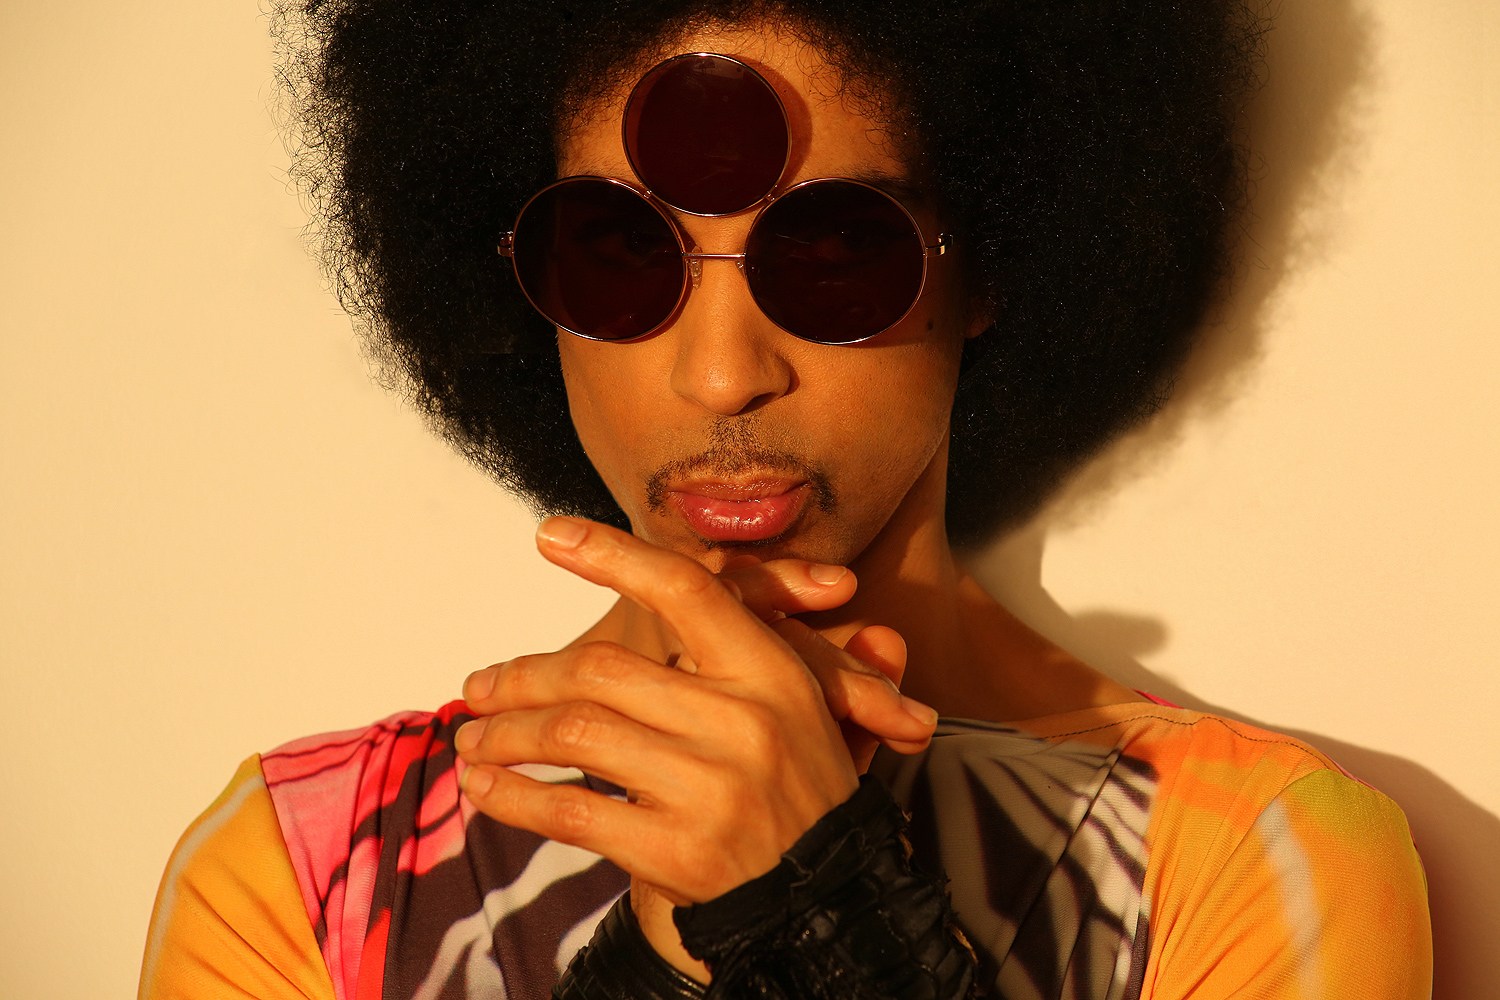 Más interrogantes de si Prince ocultaba problemas de salud